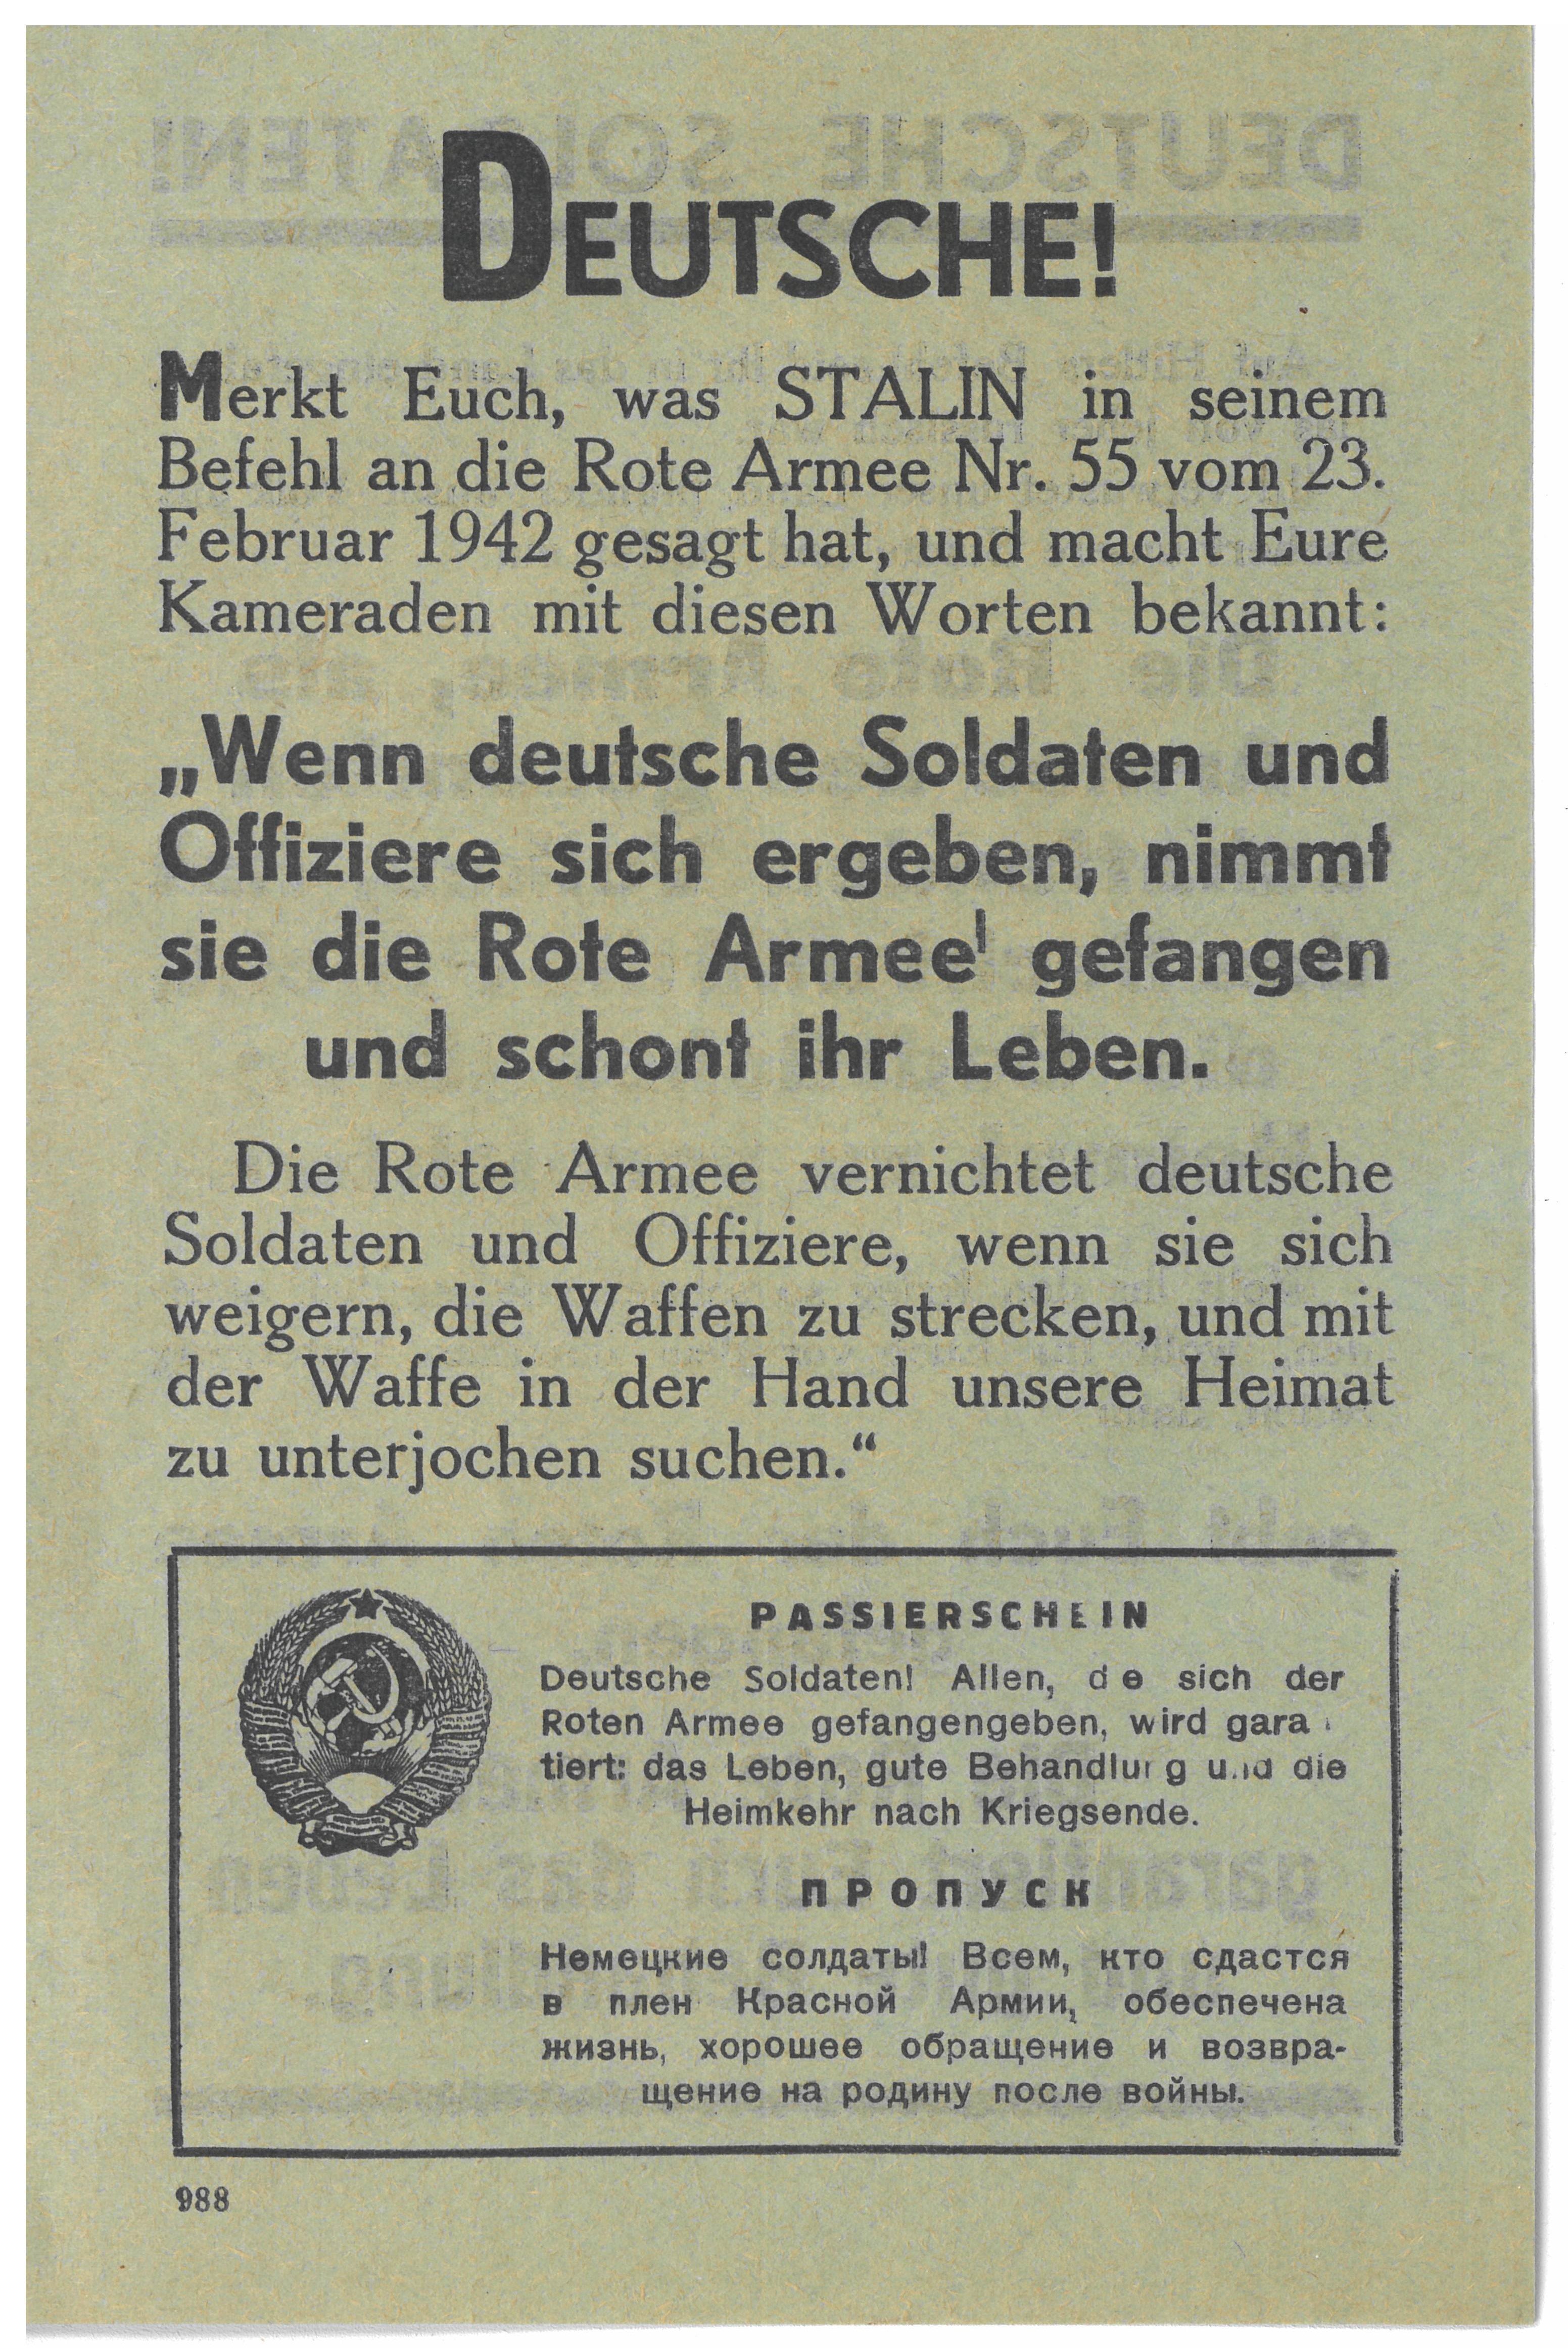 Sowjetisches Flugblatt für die Deutsche Wehrmacht, Moskau, 1942 (Museum Berlin-Karlshorst CC BY-NC-SA)